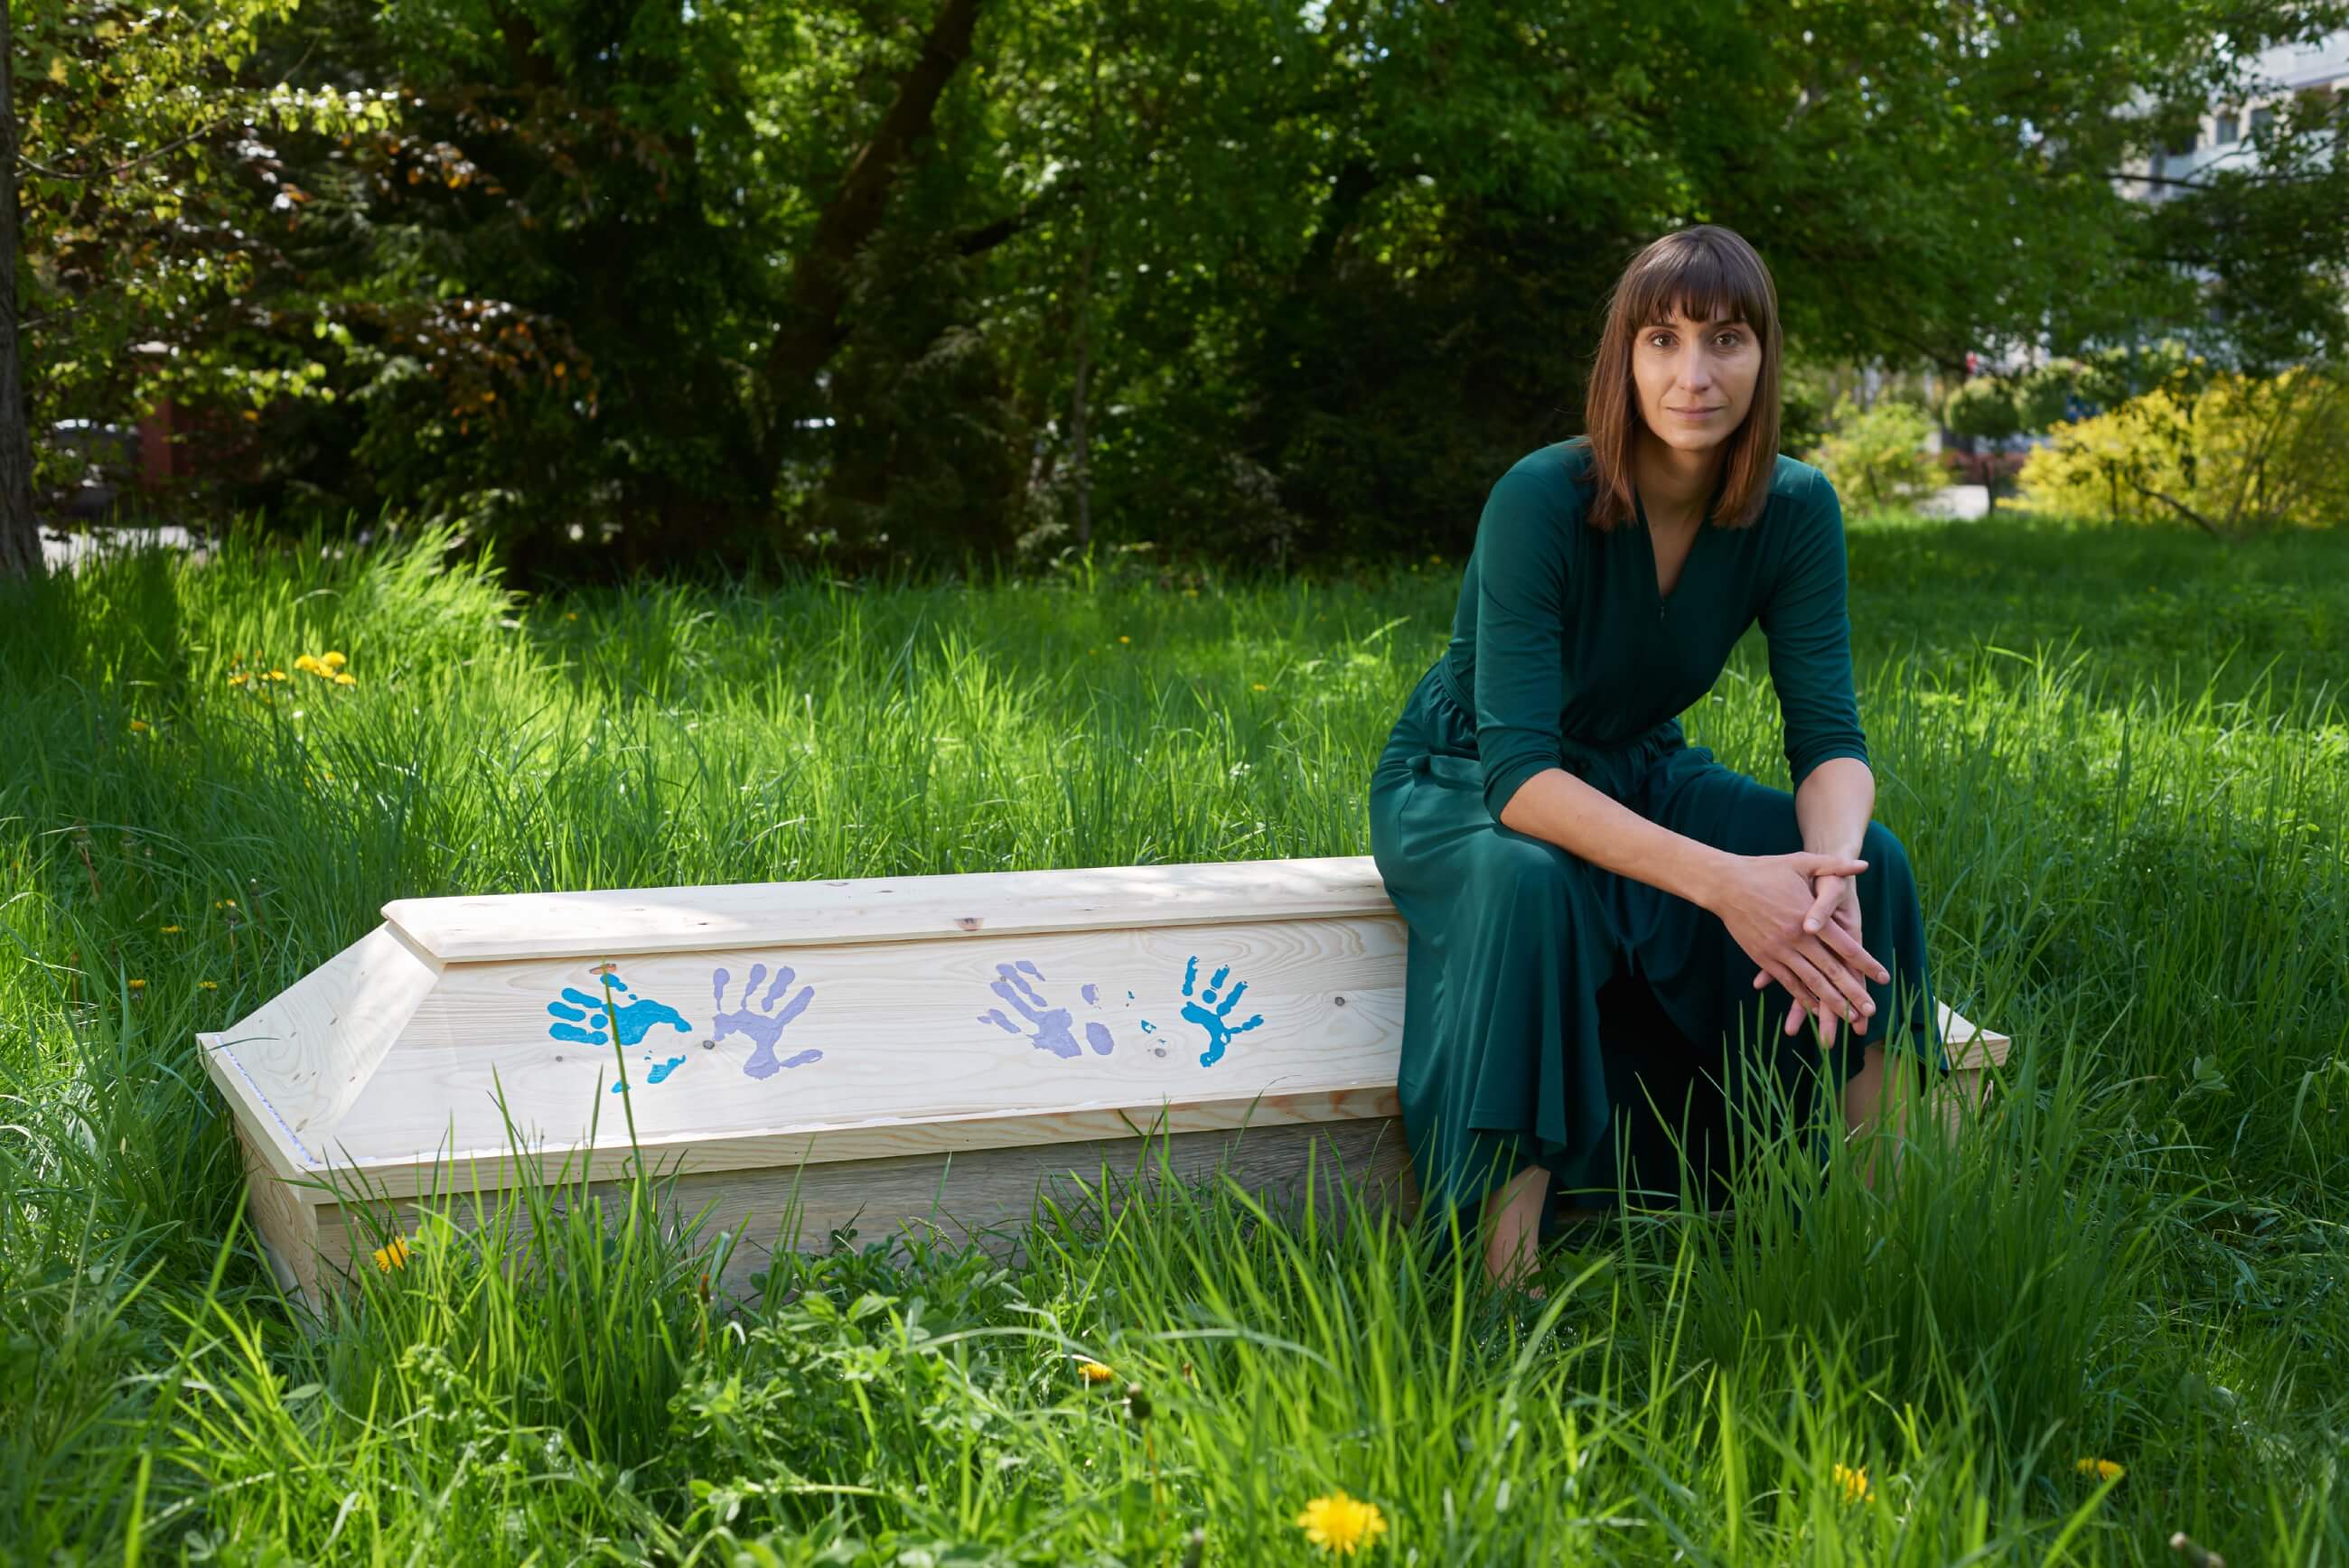 Anja Franczak siedzi na białej trumnie, na której widać kolorowe odciski dłoni. Anja ma na sobie długą, ciemnozieloną sukienkę. W tle bujna zieleń, trawa i drzewa